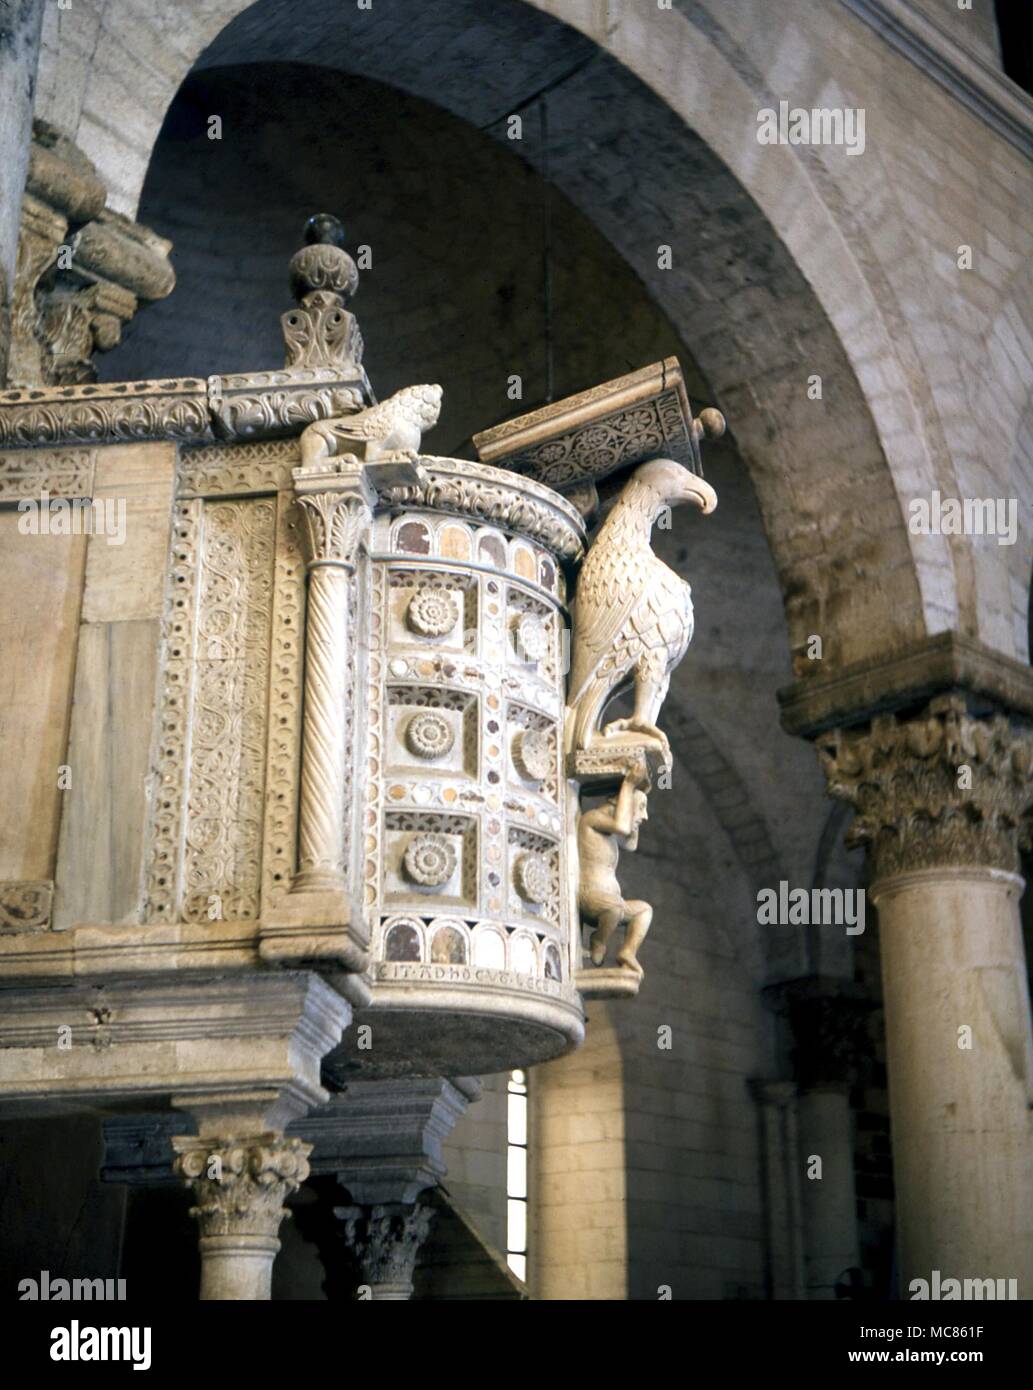 CHRISTIAN Adler und der Mensch als Rednerpult auf der esoterischen Kanzel in der Kathedrale von Bitonto, Apulien, Italien Stockfoto